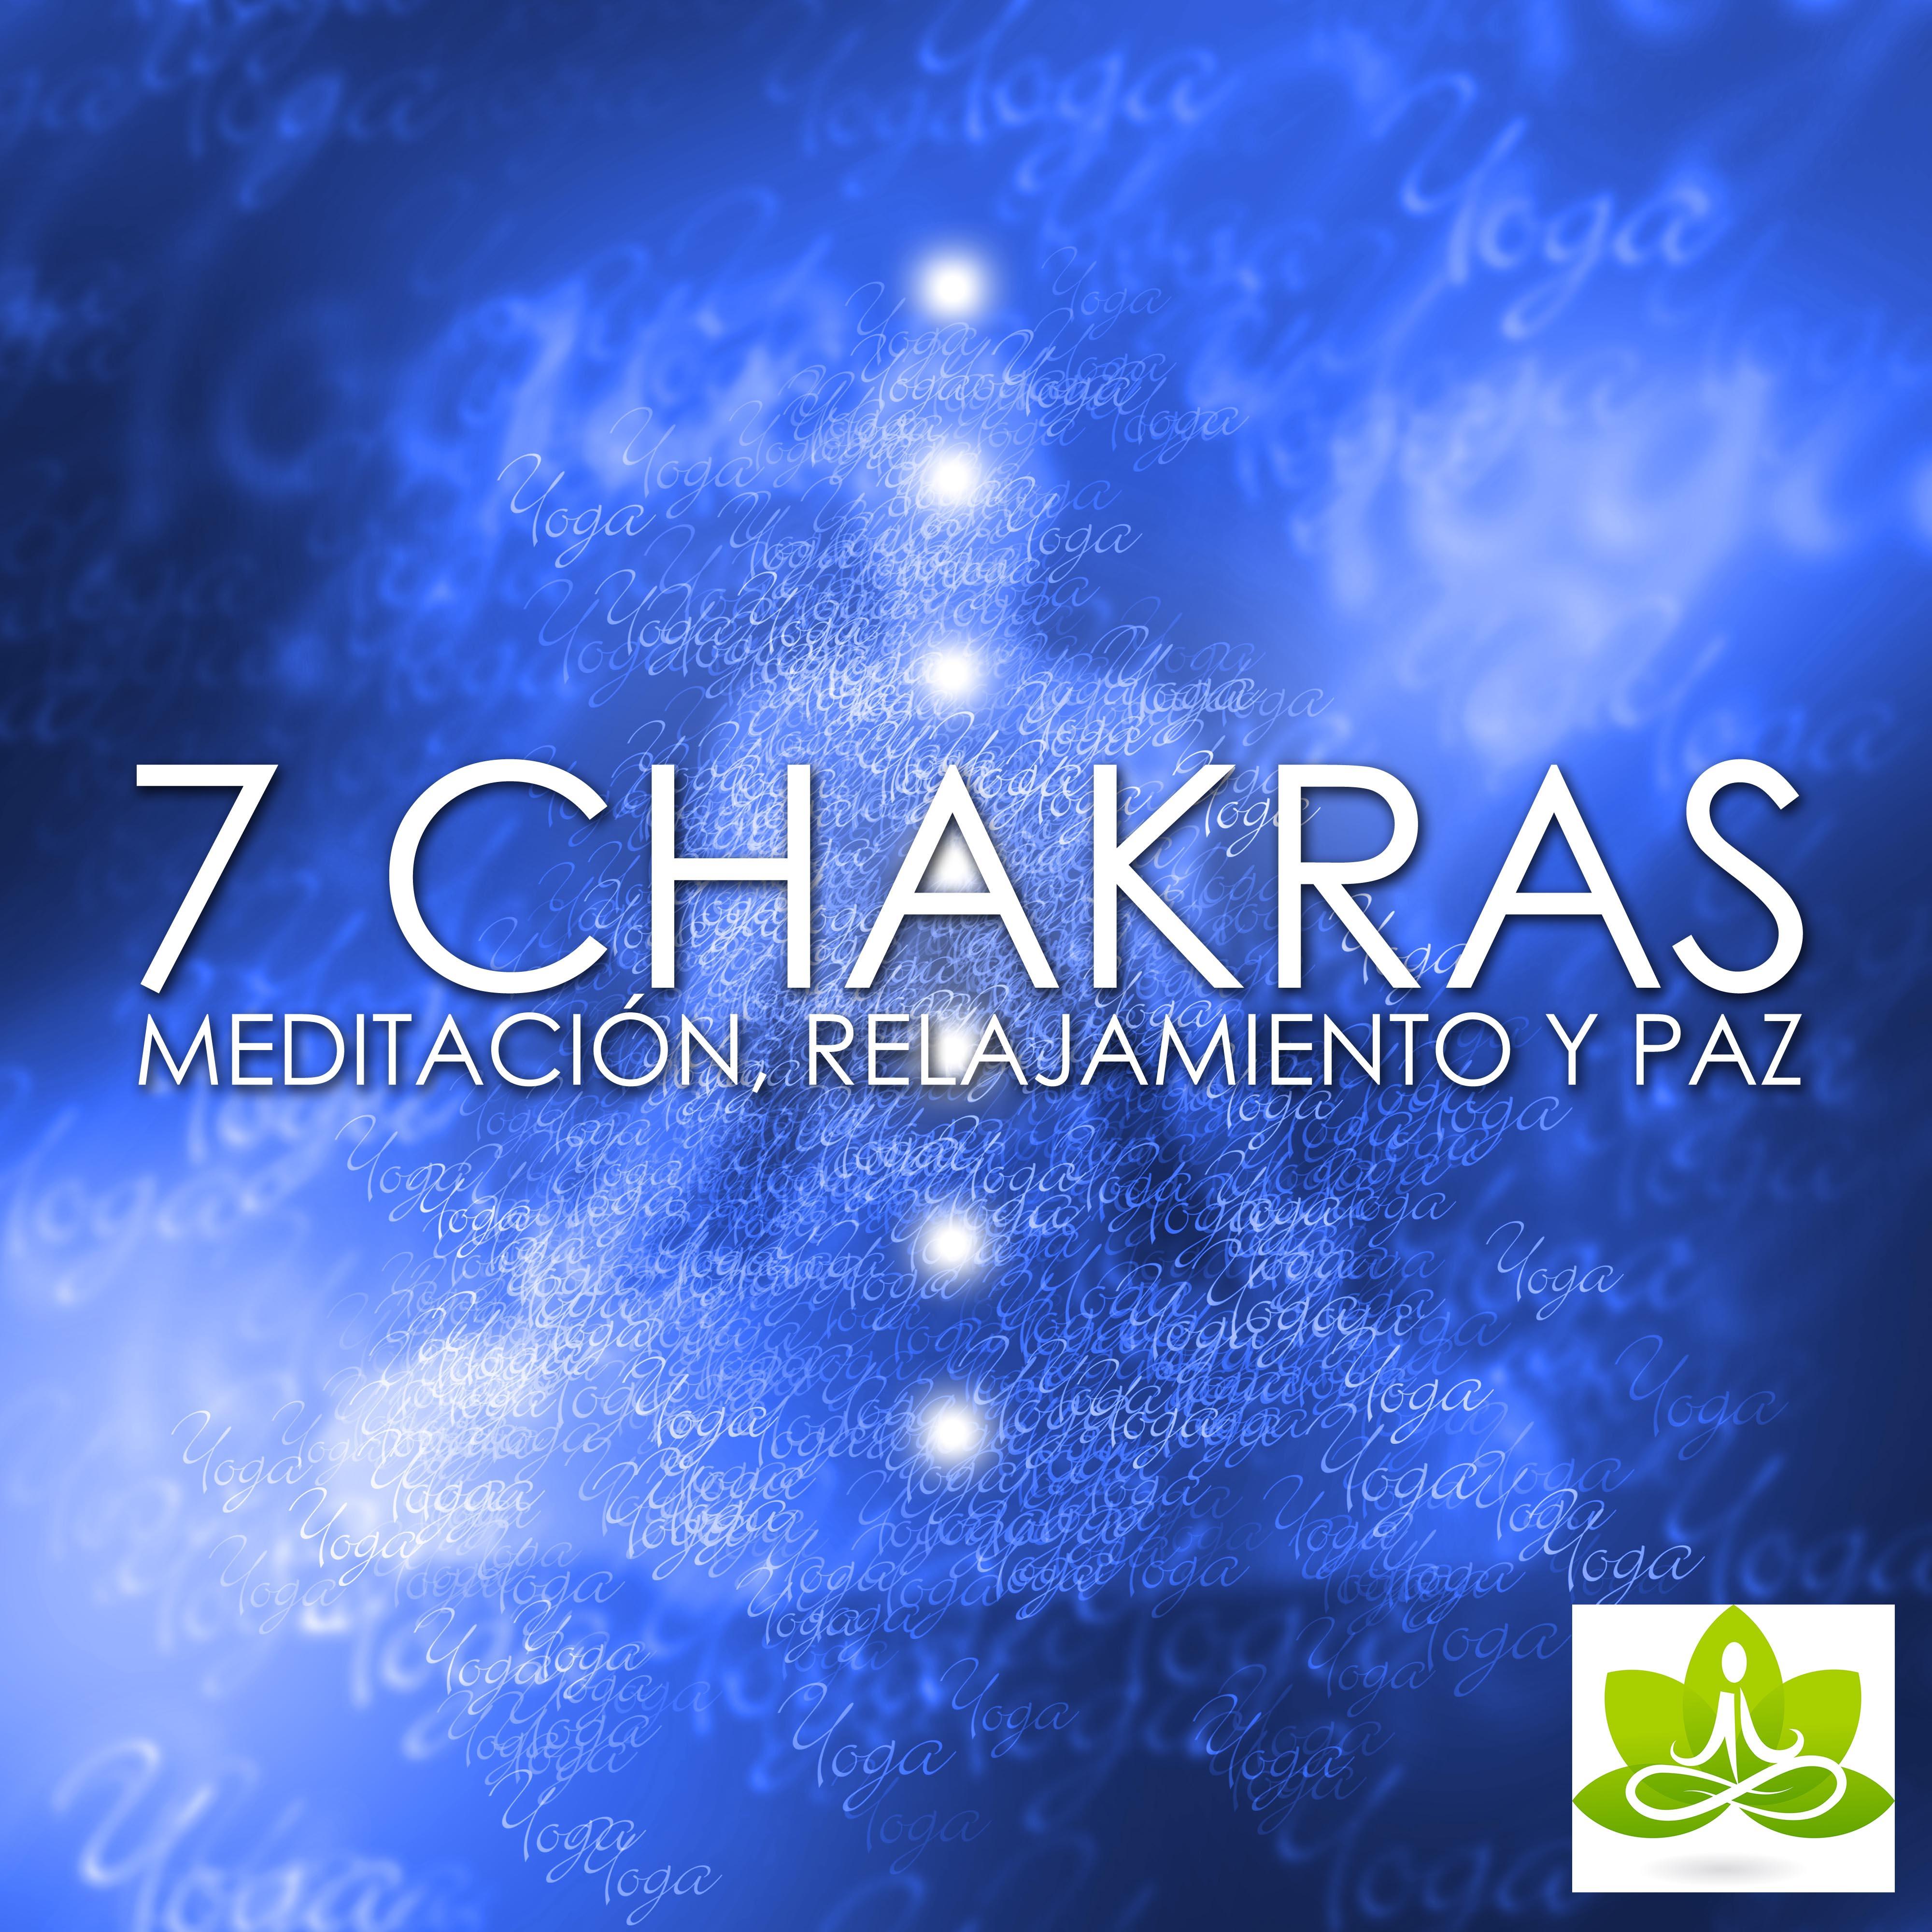 7 Chakras - Musica para Meditacion en los 7 Chakras, Relajamiento y Paz